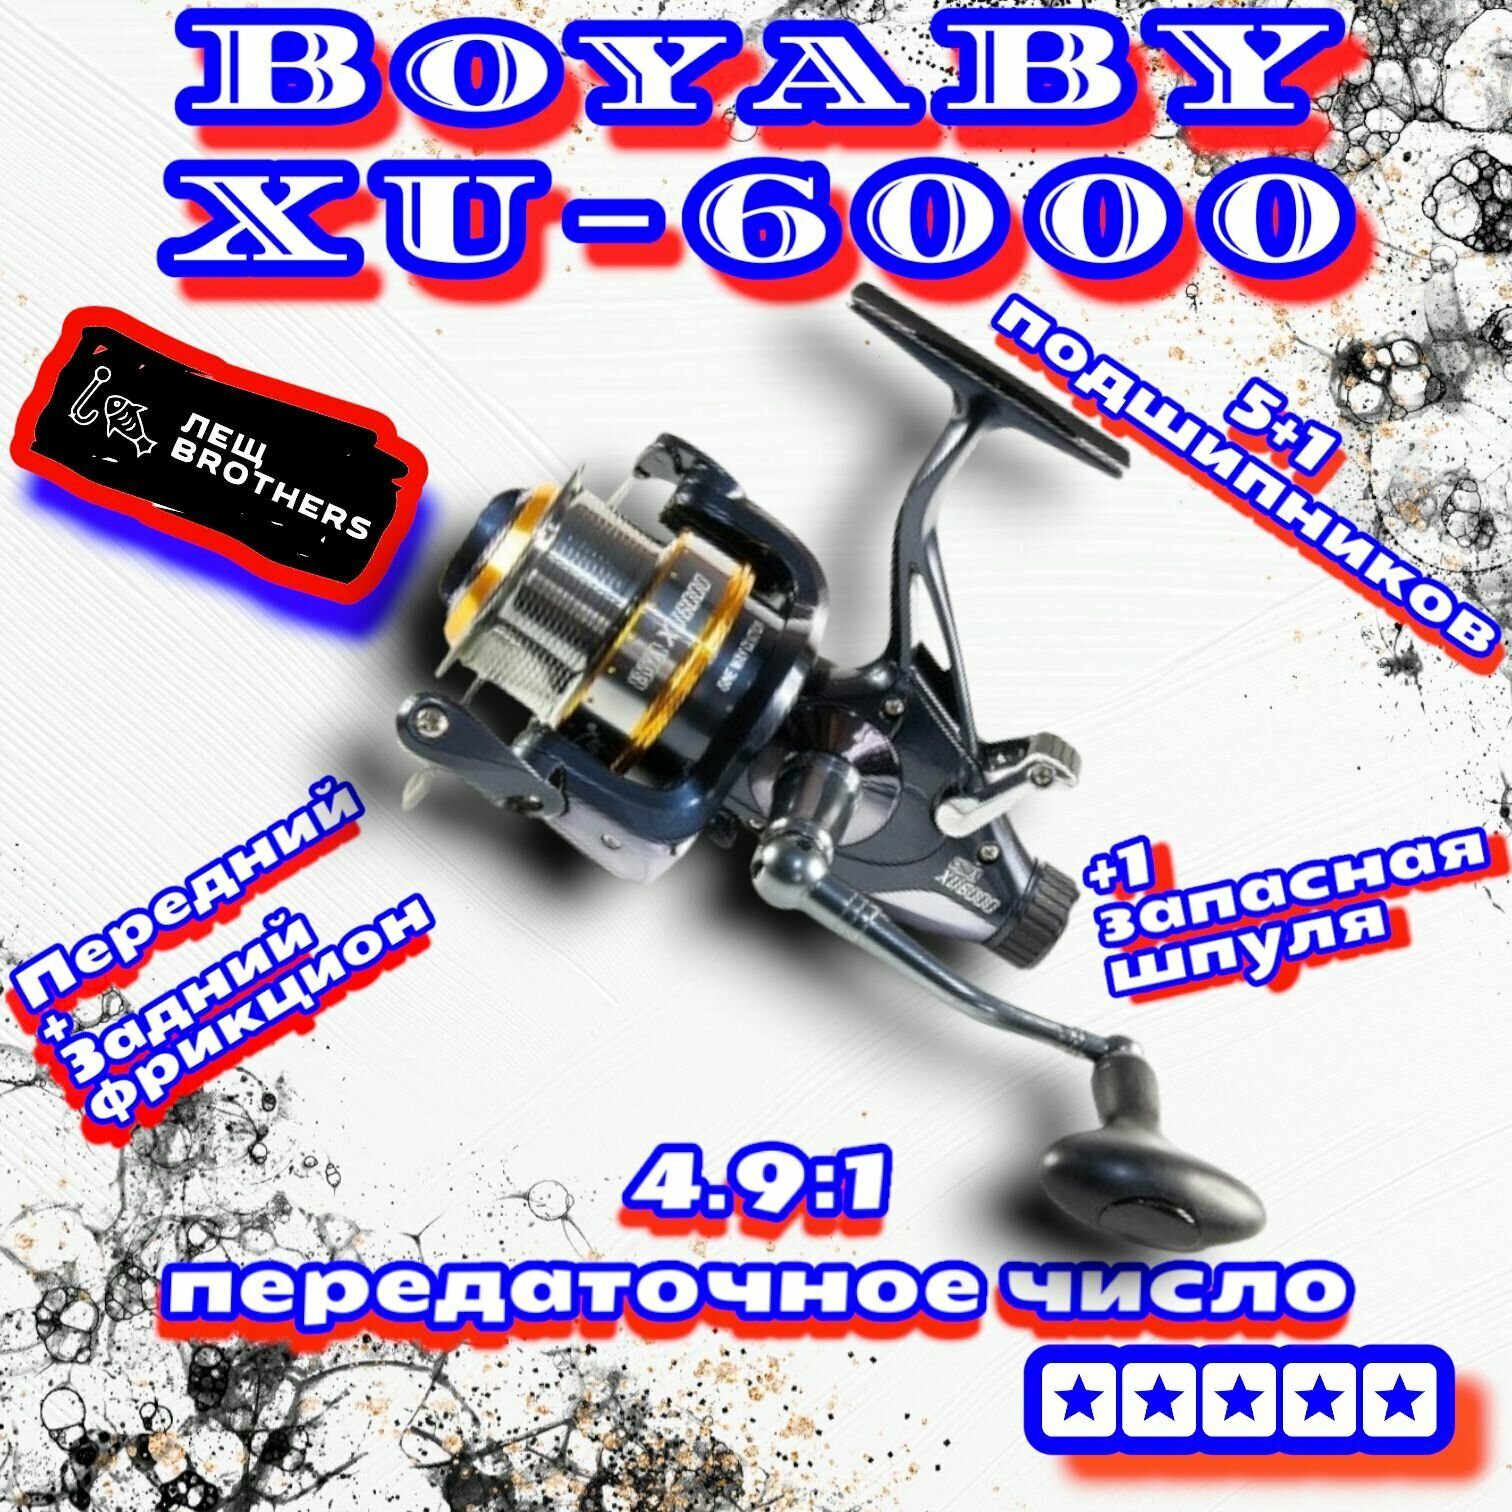 Катушка BoyaBY XU-6000 карповая 5+1 подшипников дополнительная шпуля передний+задний фрикцион передаточное число 4.9:1